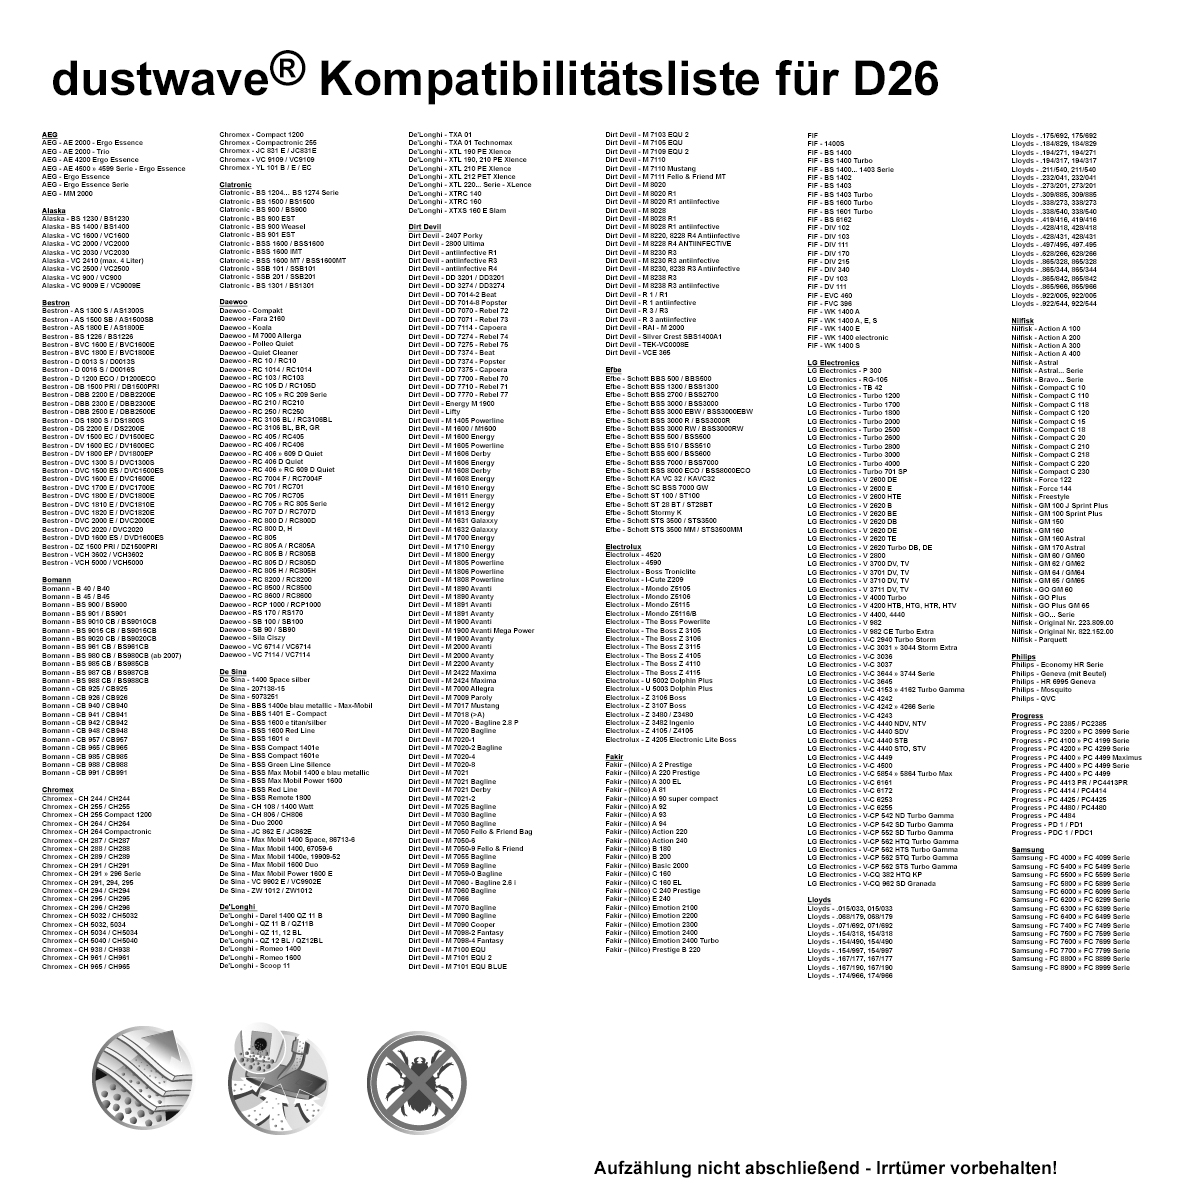 Dustwave® 1 Staubsaugerbeutel für Hoover H 75 / H75 - hocheffizient, mehrlagiges Mikrovlies mit Hygieneverschluss - Made in Germany